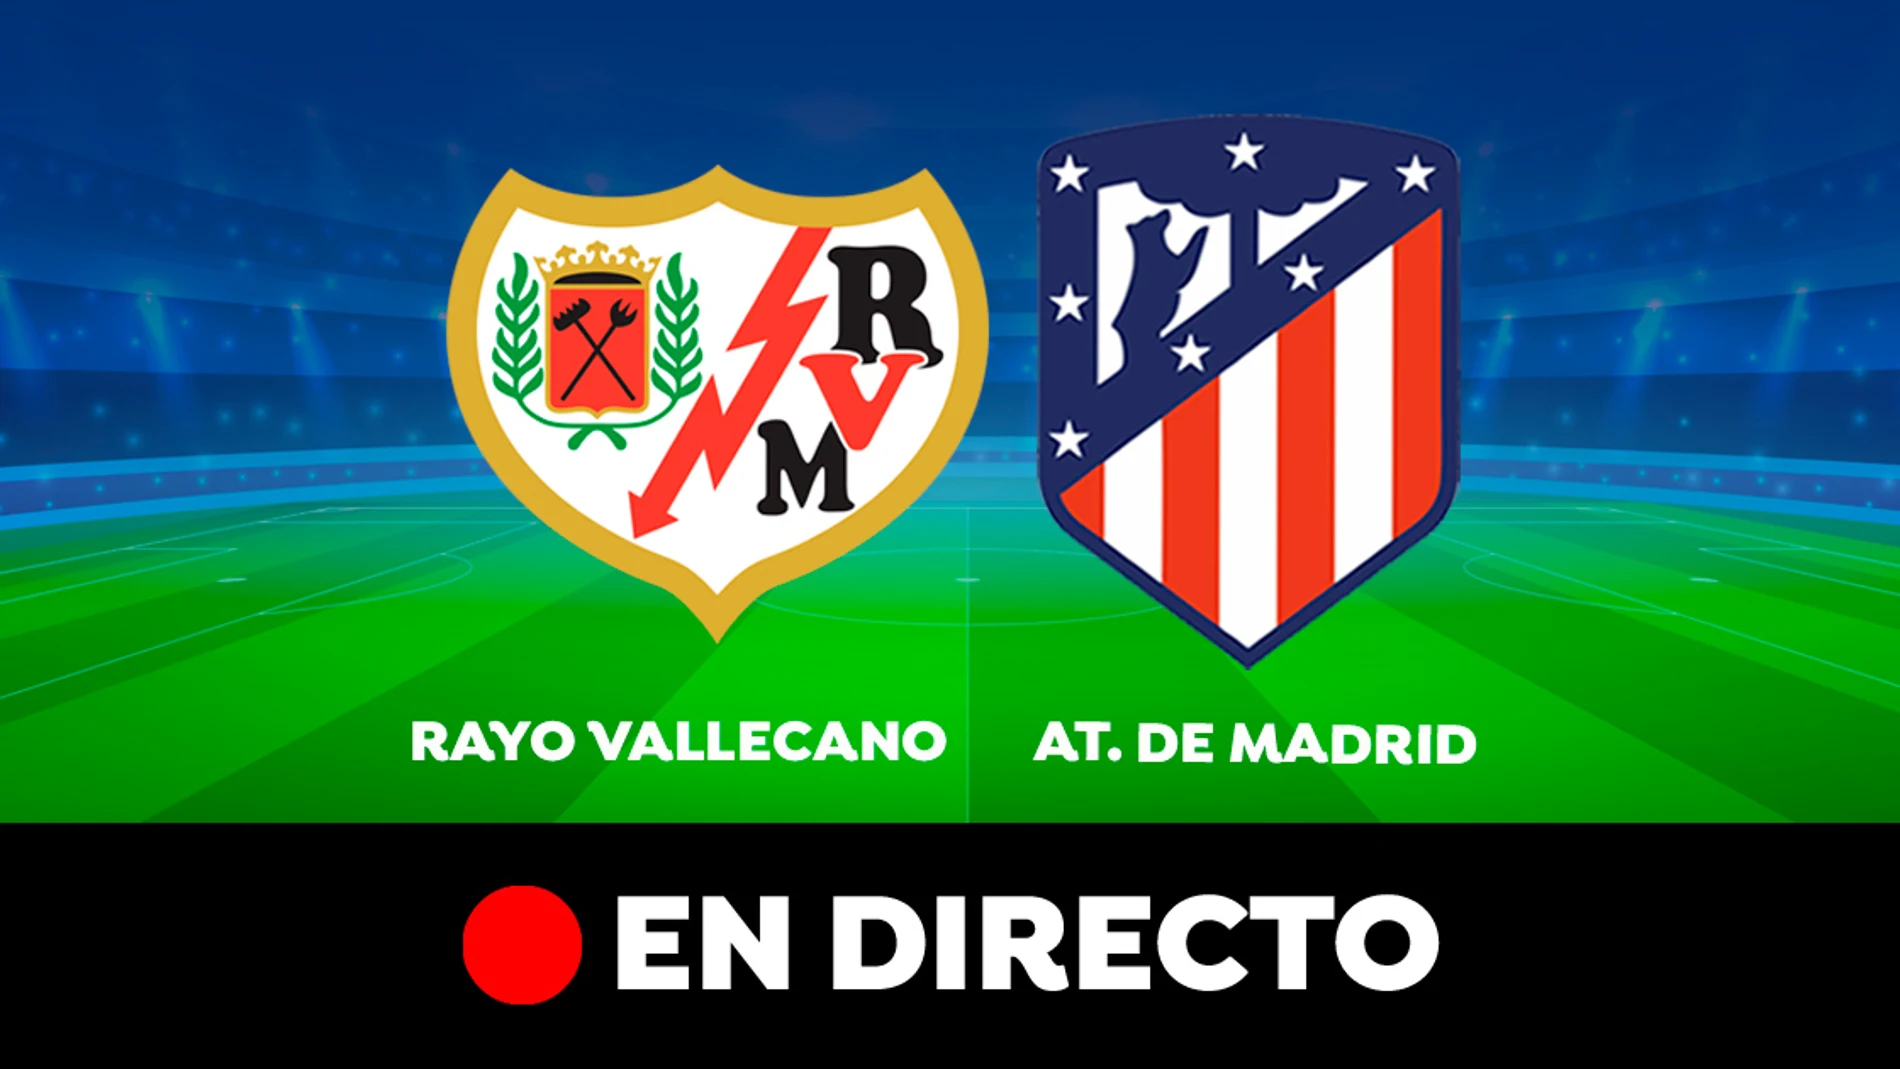 Rayo Vallecano - Atlético de Madrid: partido de hoy de la Liga Santander, en directo